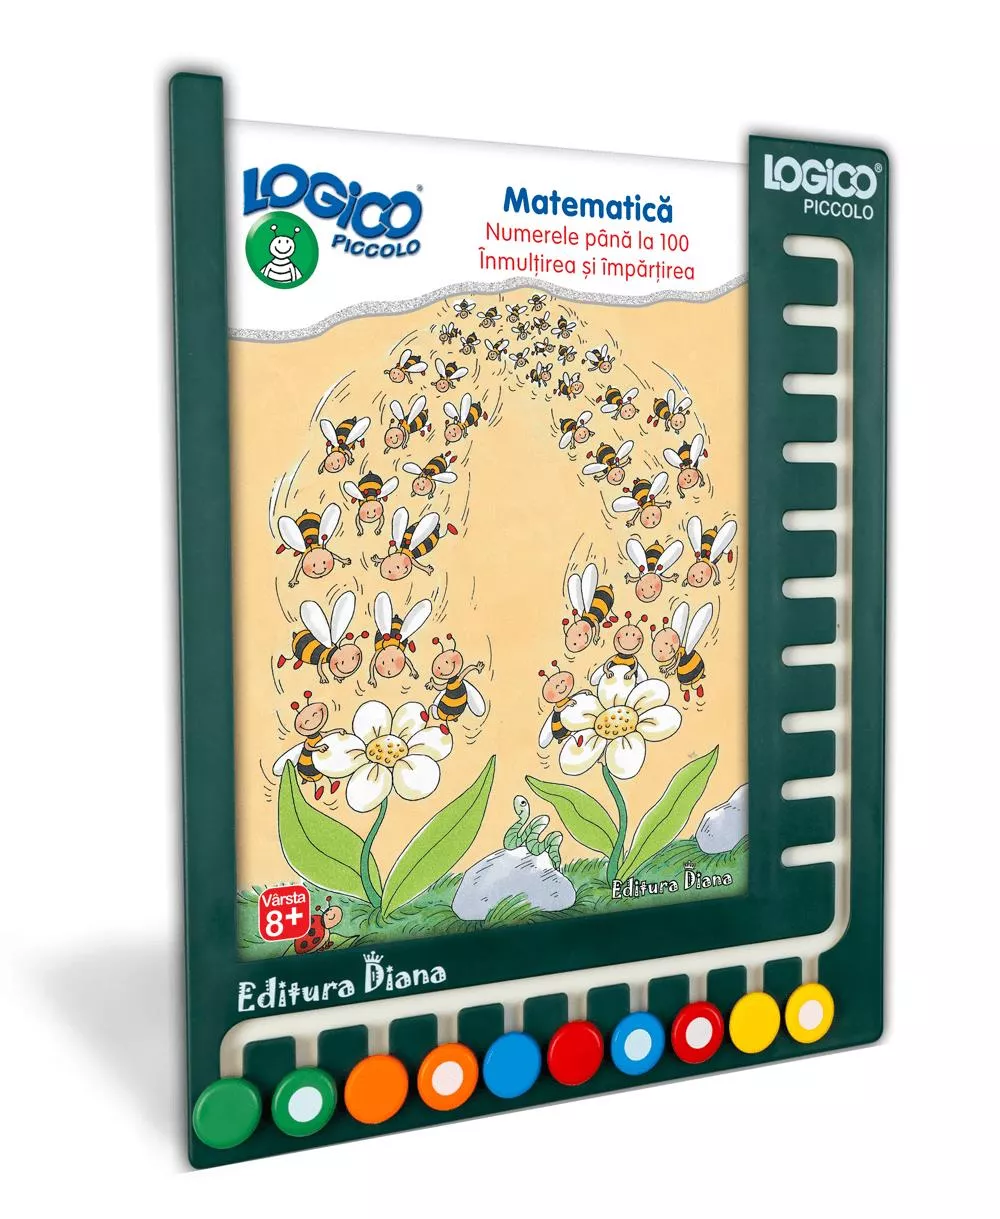 LOGICO PICCOLO - SET CU RAMĂ - Matematică (8+) - Numerele până la 100